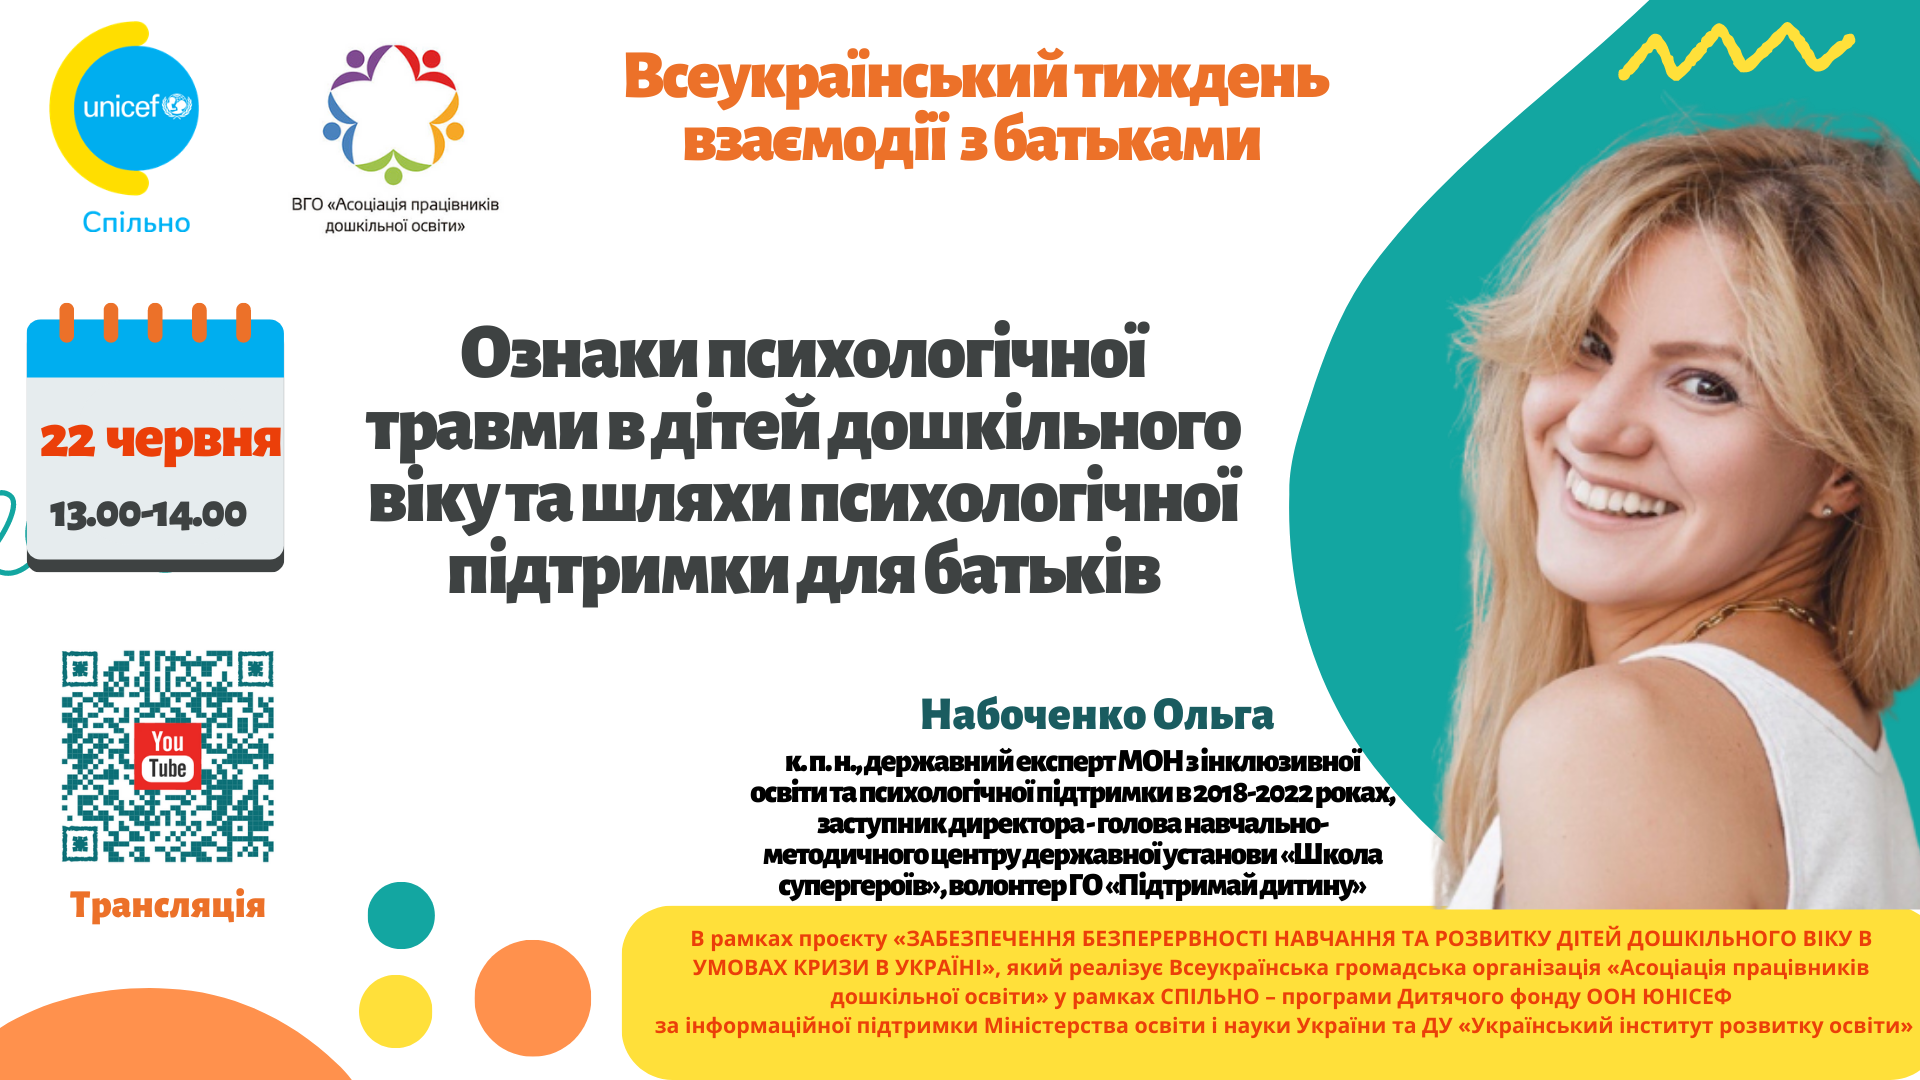 Всеукраїнська громадська організація «Асоціація працівників дошкільної освіти»